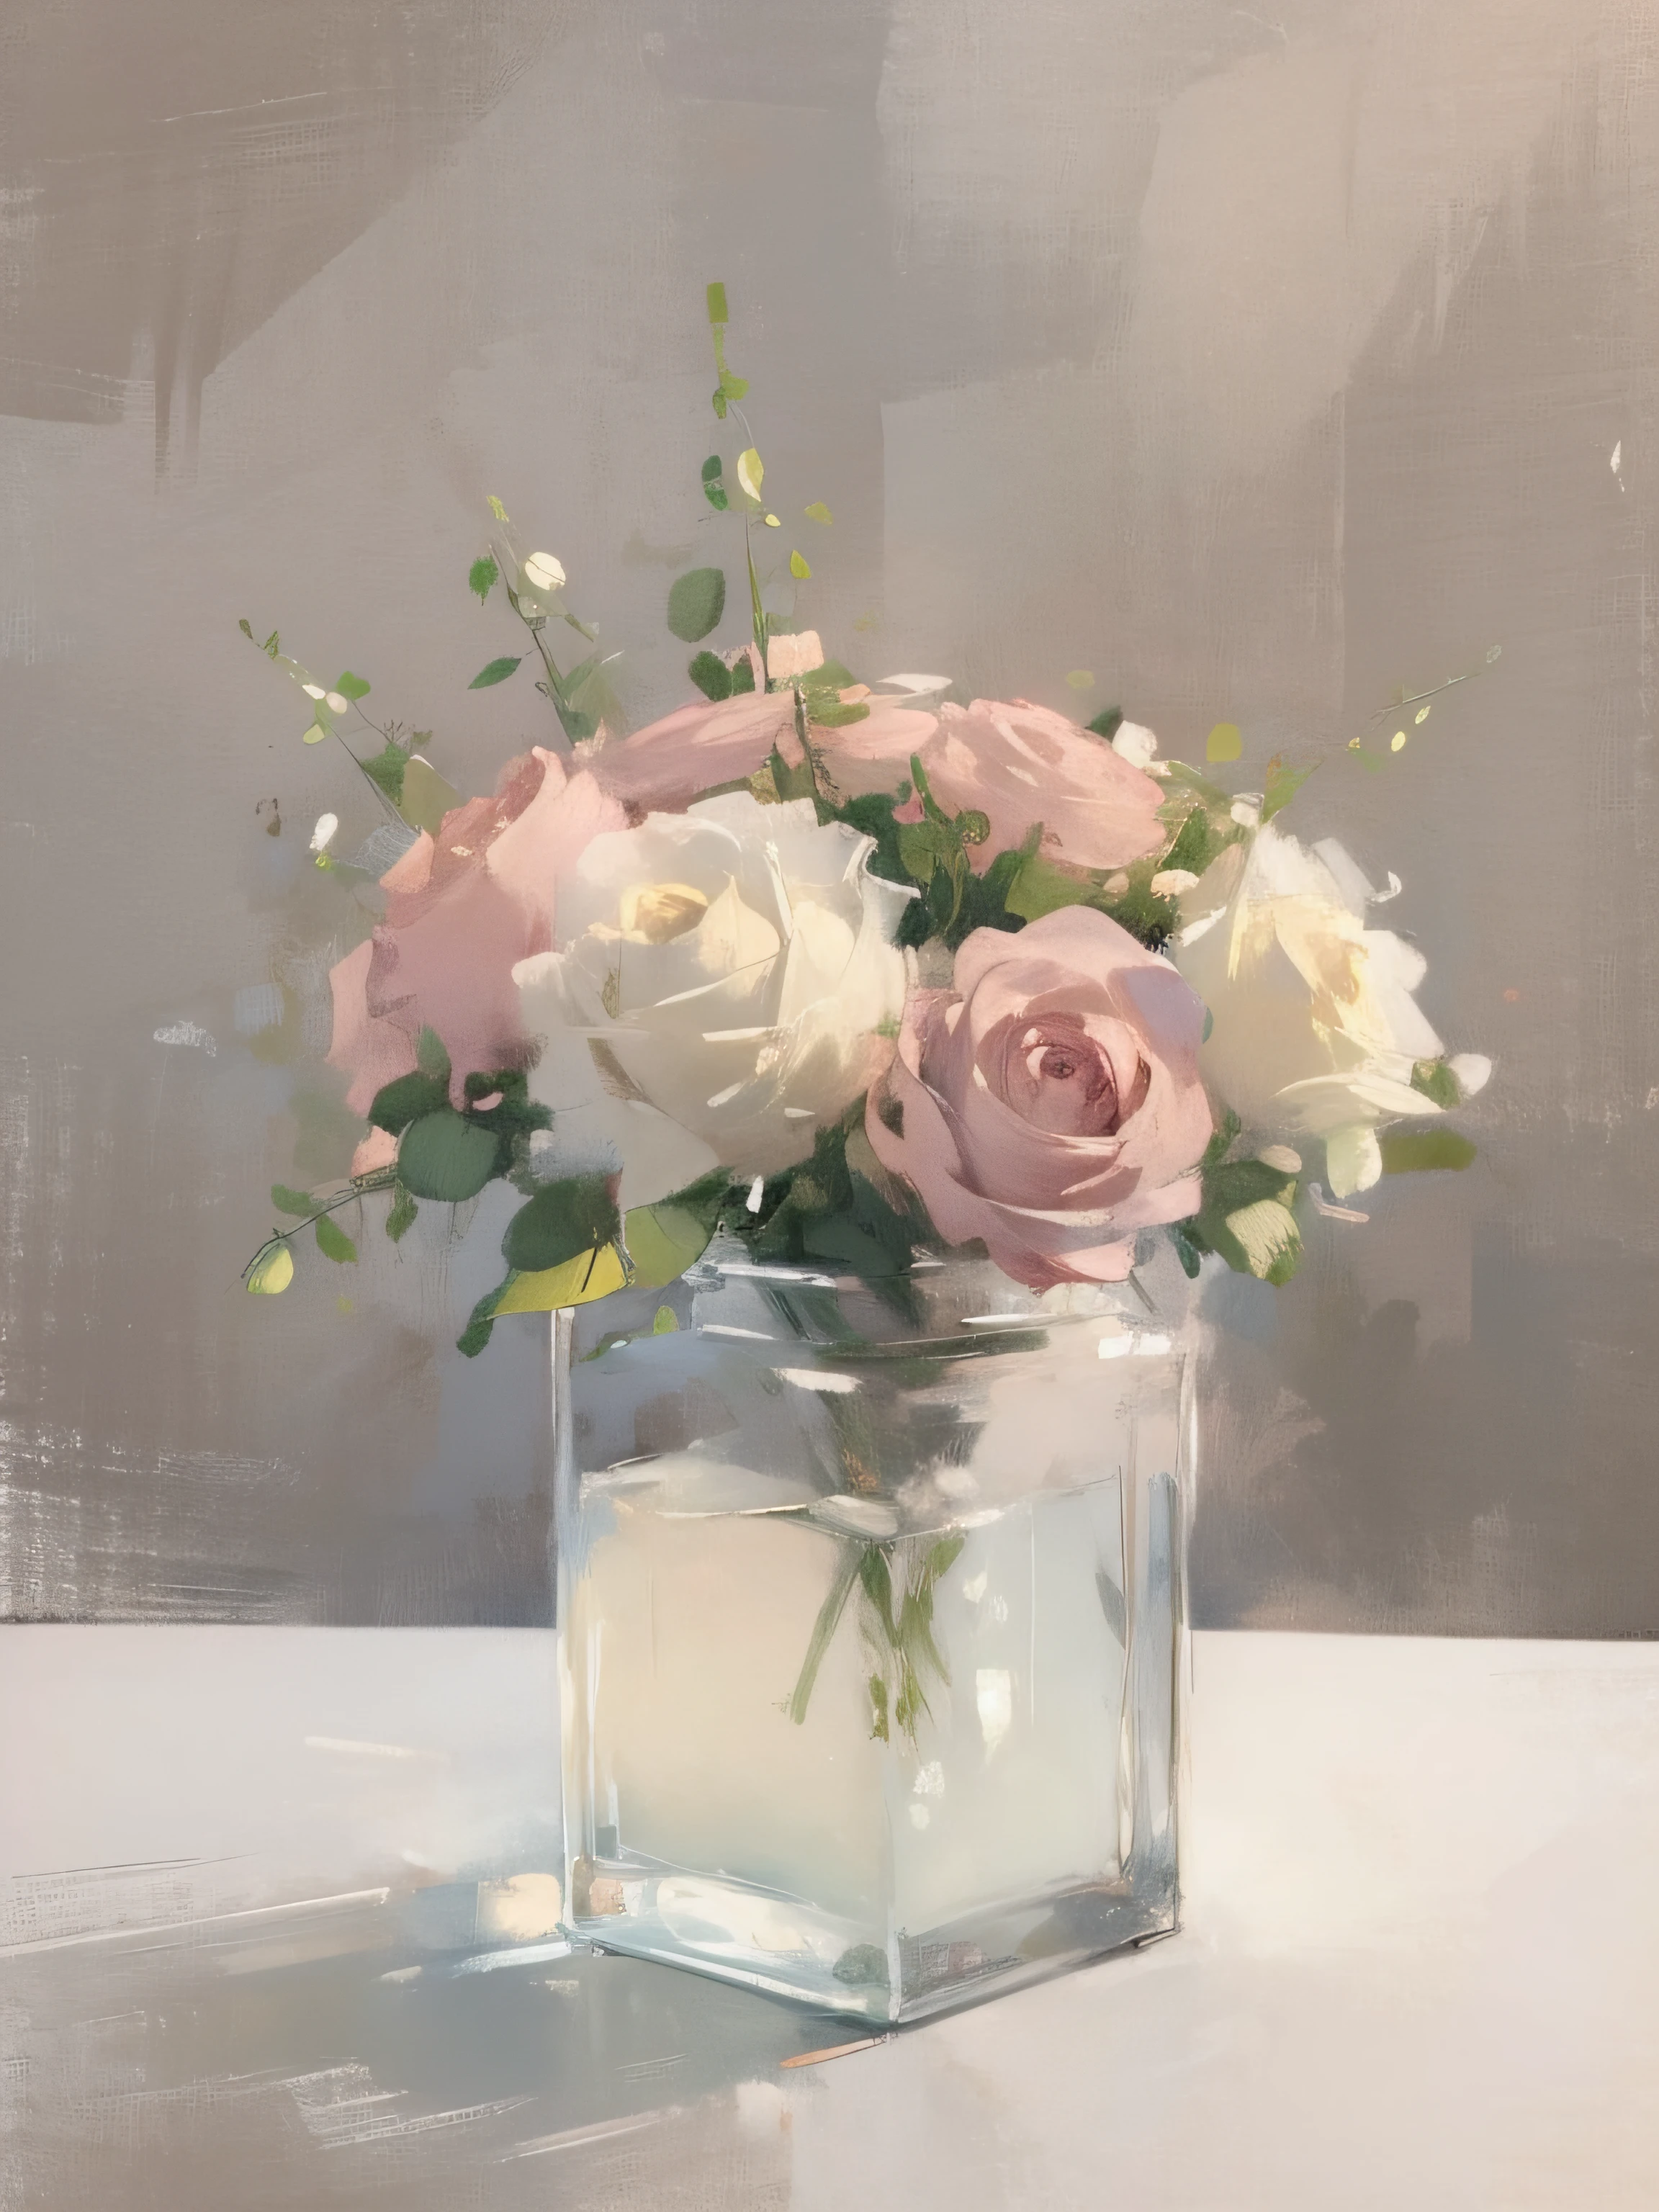 复古柔和的静物画, 粉色和白色花朵植物